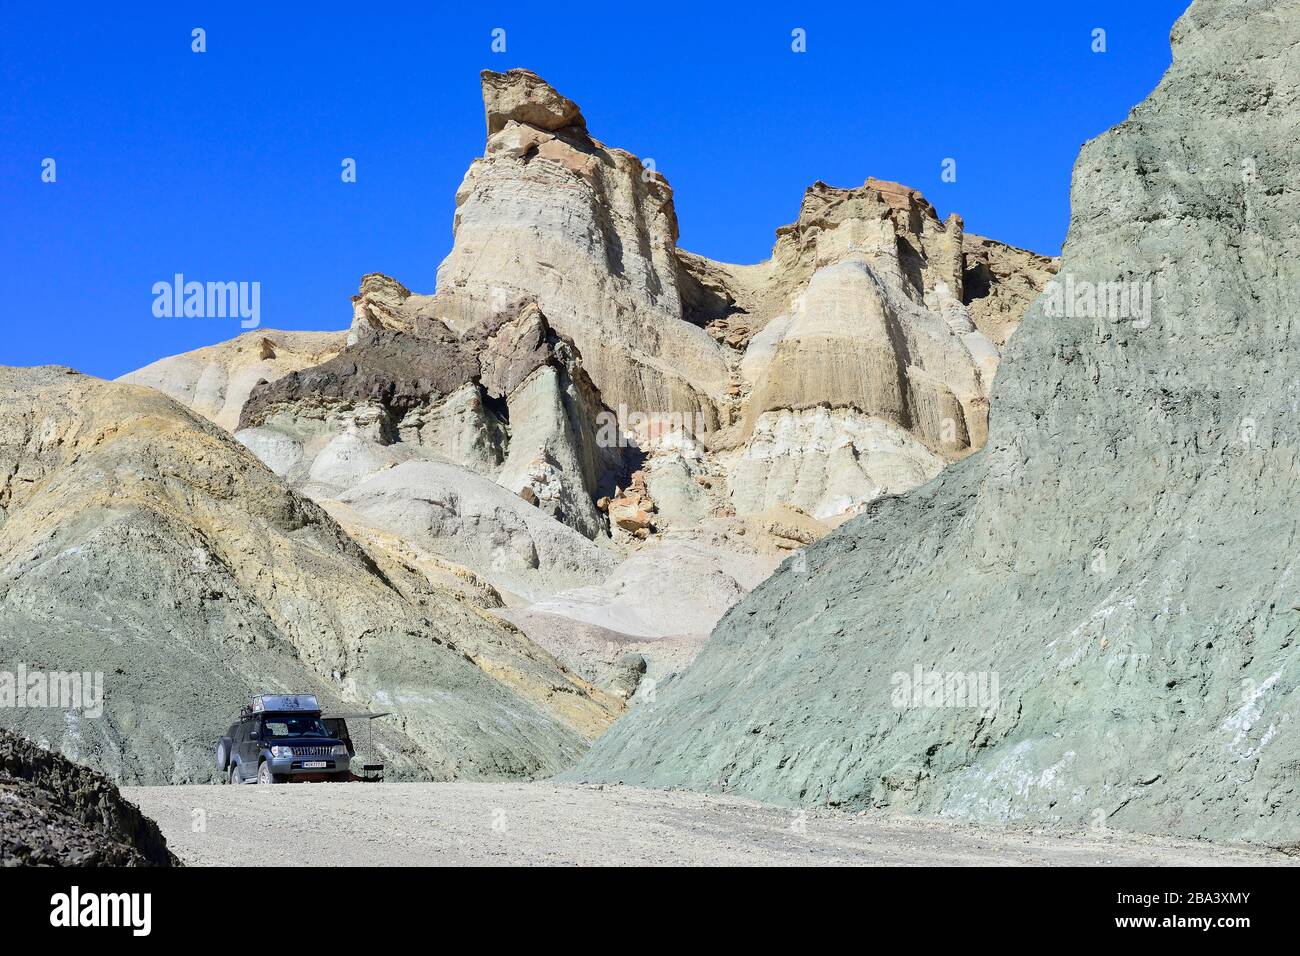 Geländewagen, Toyota Land Cruiser bei den bizarren Felsformationen des Cerro Alcazar, Calingasta, Provinz San Juan, Argentinien Stockfoto